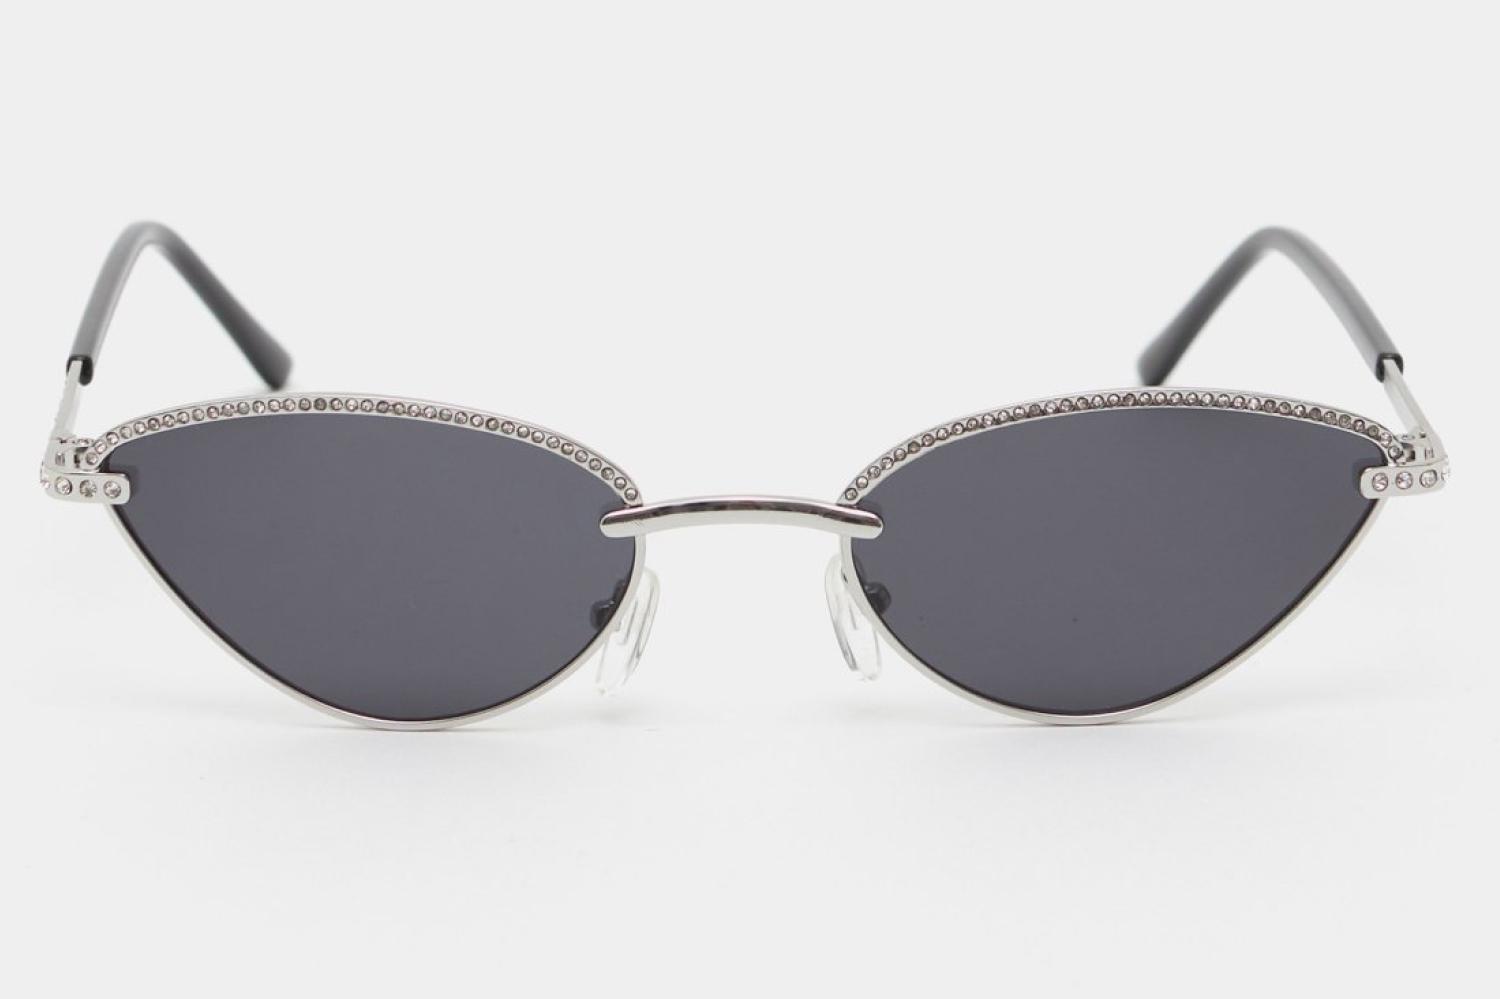 Солнцезащитные очки, LIMÉ, 2599 руб. (lime-shop.com)